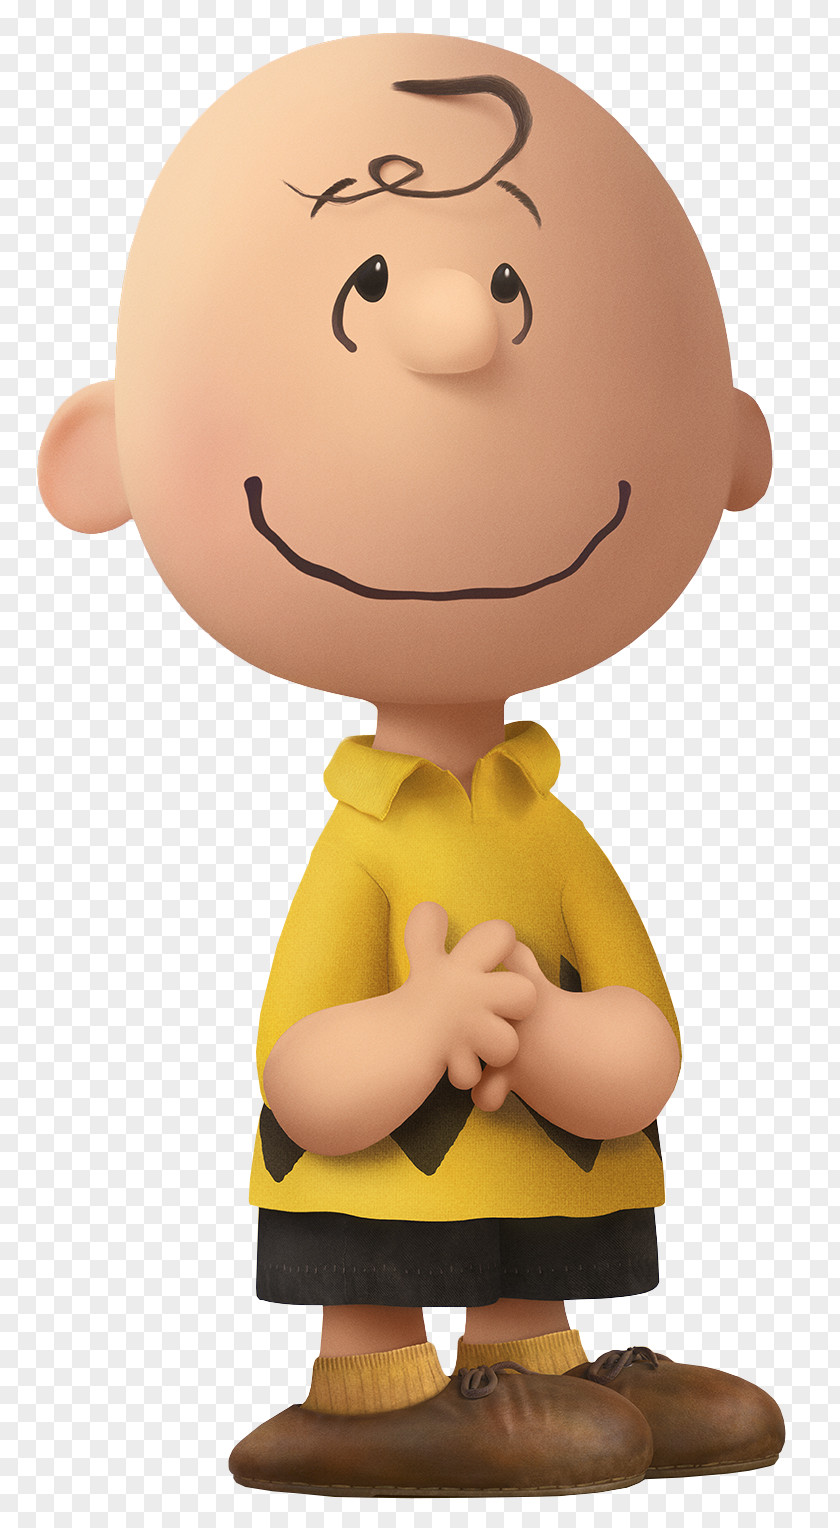 Charlie Brown The Peanuts Movie Transparent Cartoon Snoopy Linus Van Pelt Lucy PNG